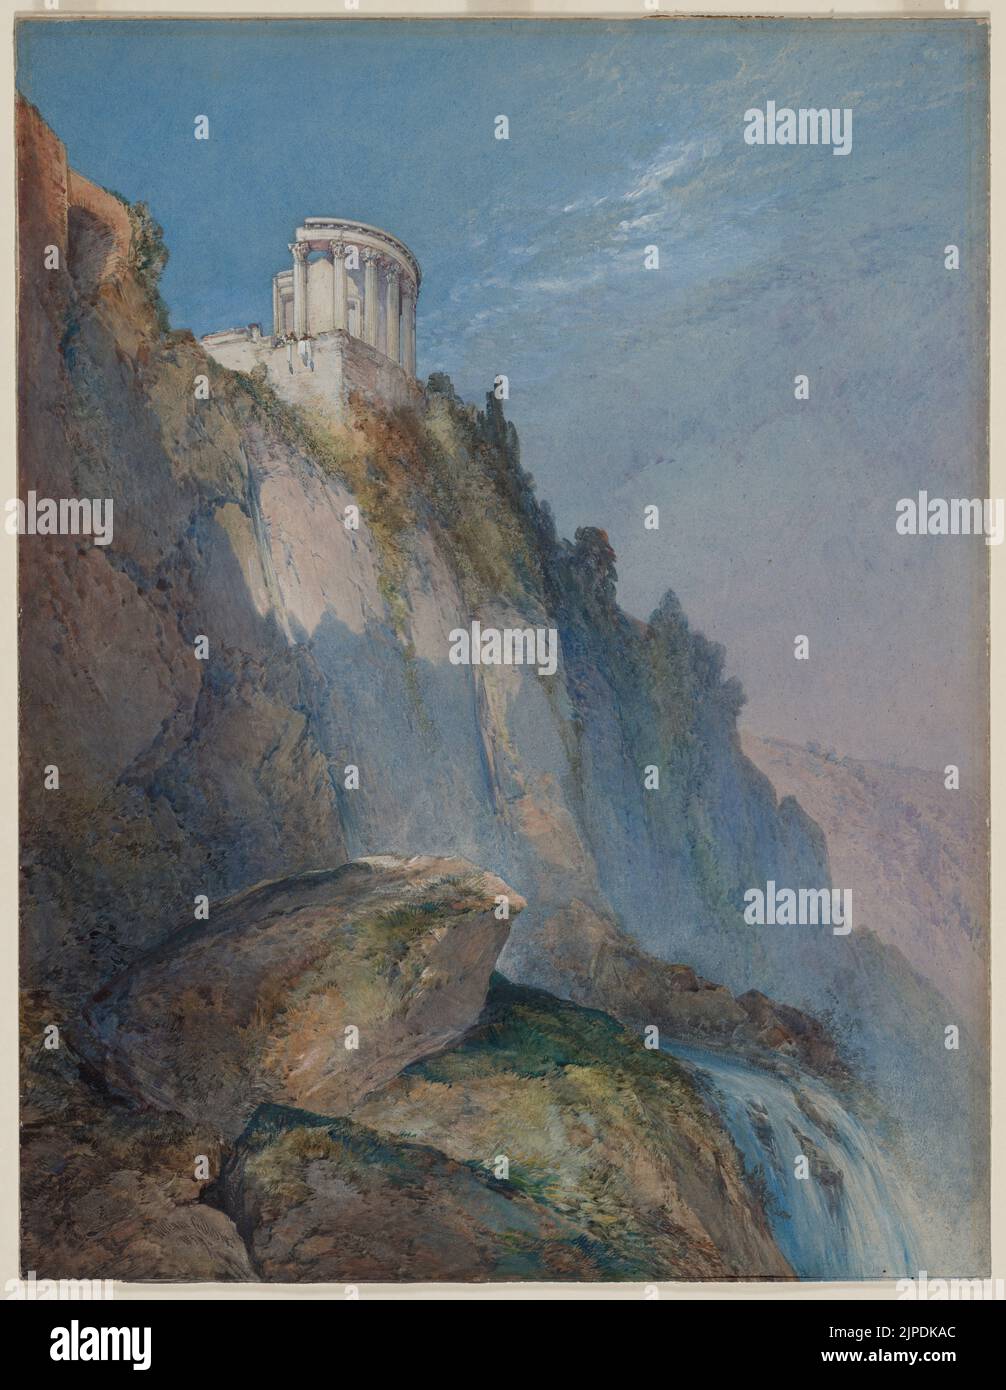 Der Tempel von Vesta und die Wasserfälle bei Tivoli, 1859. William Callow (Großbritannien, 1812-1908). Aquarell mit Gouache- und Graphitunterzeichnung; Eine akribisch fertige, großformatige Präsentation Aquarell, diese Zeichnung wurde 1860 in der Society of Painters in Water Colors in London ausgestellt. Der Blick wurde von einem niedrigen Aussichtspunkt aus aufgenommen, der eng beobachtete, moosbewachsene Felsen inmitten der schaumigen Kaskade vorhersah. Der Tempel von Vesta, ein Juwel, überragt die imposante Klippe, strahlend weiß vor einem kristallklaren, blauen Himmel. Die Majestät der Ansicht wird durch die Anwesenheit von fast nicht wahrnehmbaren Figur unterstrichen Stockfoto